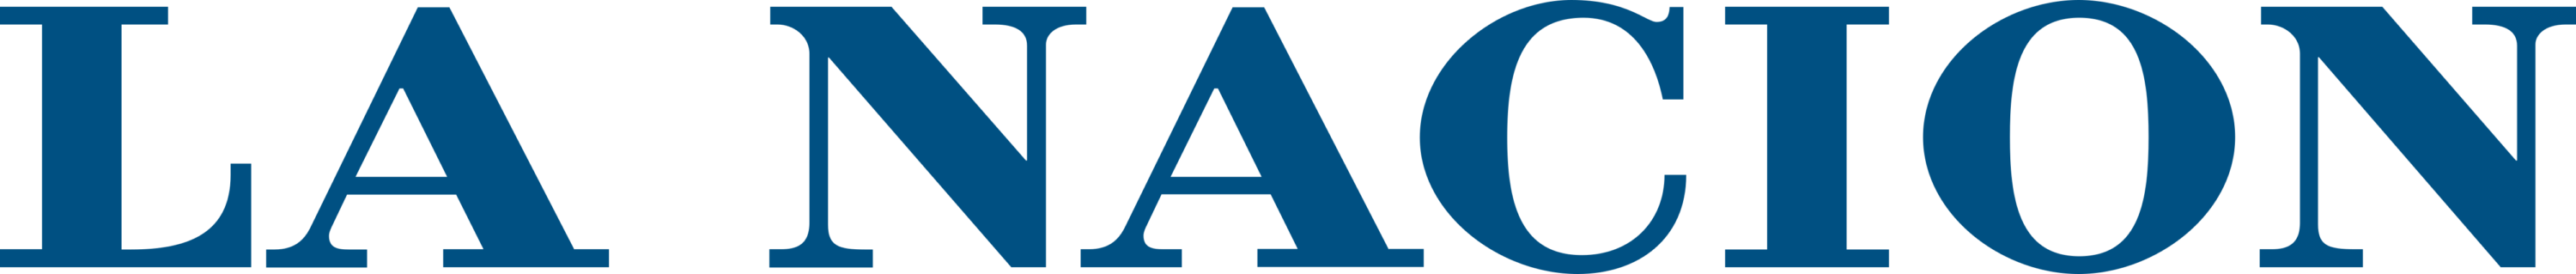 La Nación Logo text